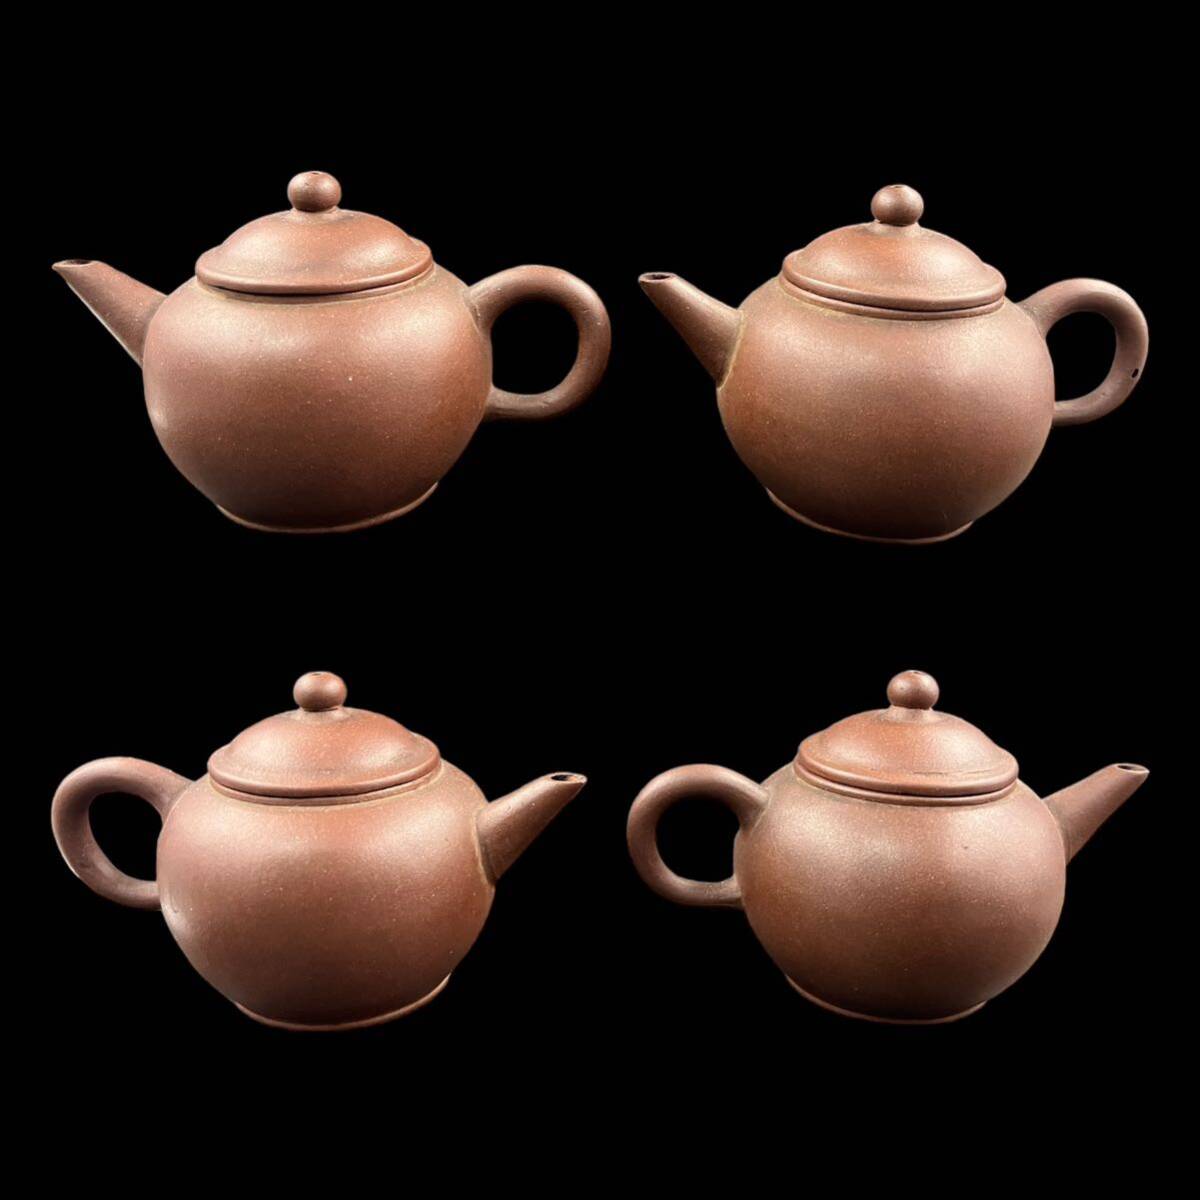 【KF2176】朱泥 一対 在銘 後手急須 唐物 茶器 茶道具 中国古玩 煎茶道具 _画像4